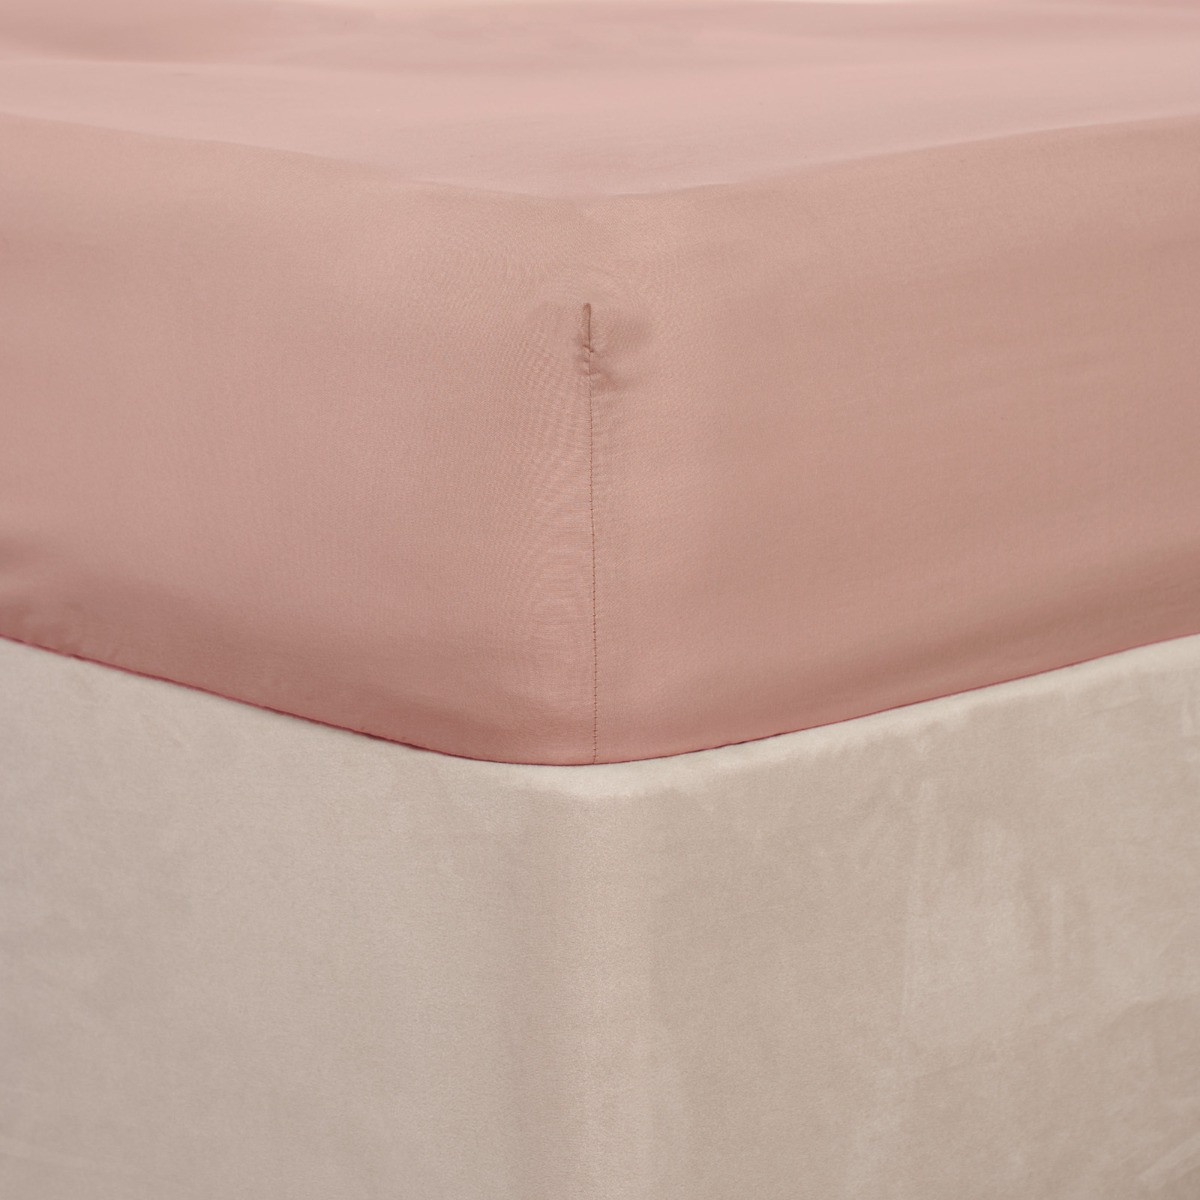 Brentfords Plain Fitted Bed Sheet, Blush Pink - Super King>